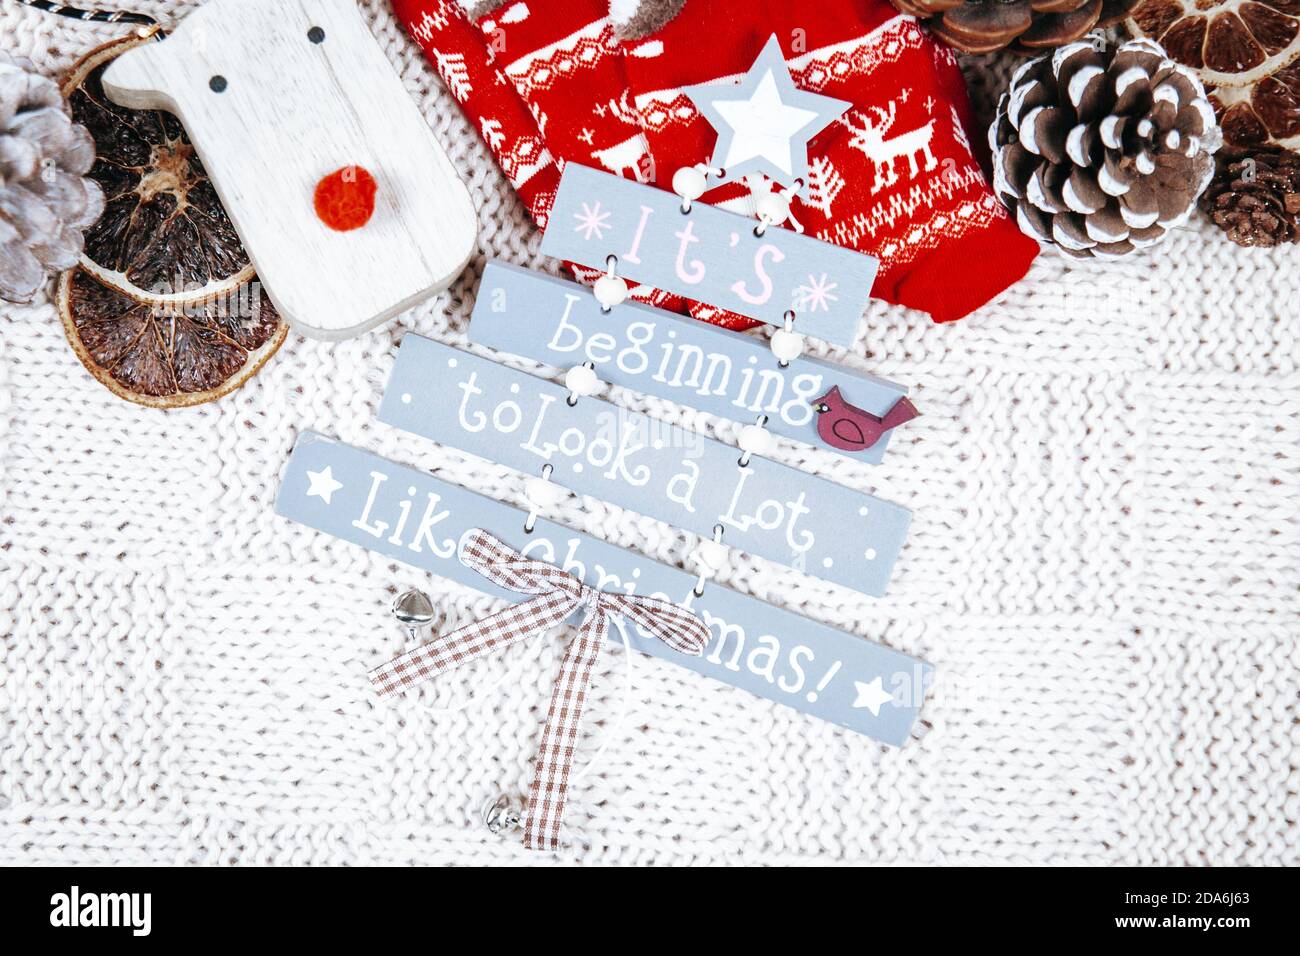 Es fängt an, viel wie Weihnachtsschild mit Weihnachtsdekorationen auf einer weißen Strickdecke aussehen. Weihnachtsstimmung. Stockfoto